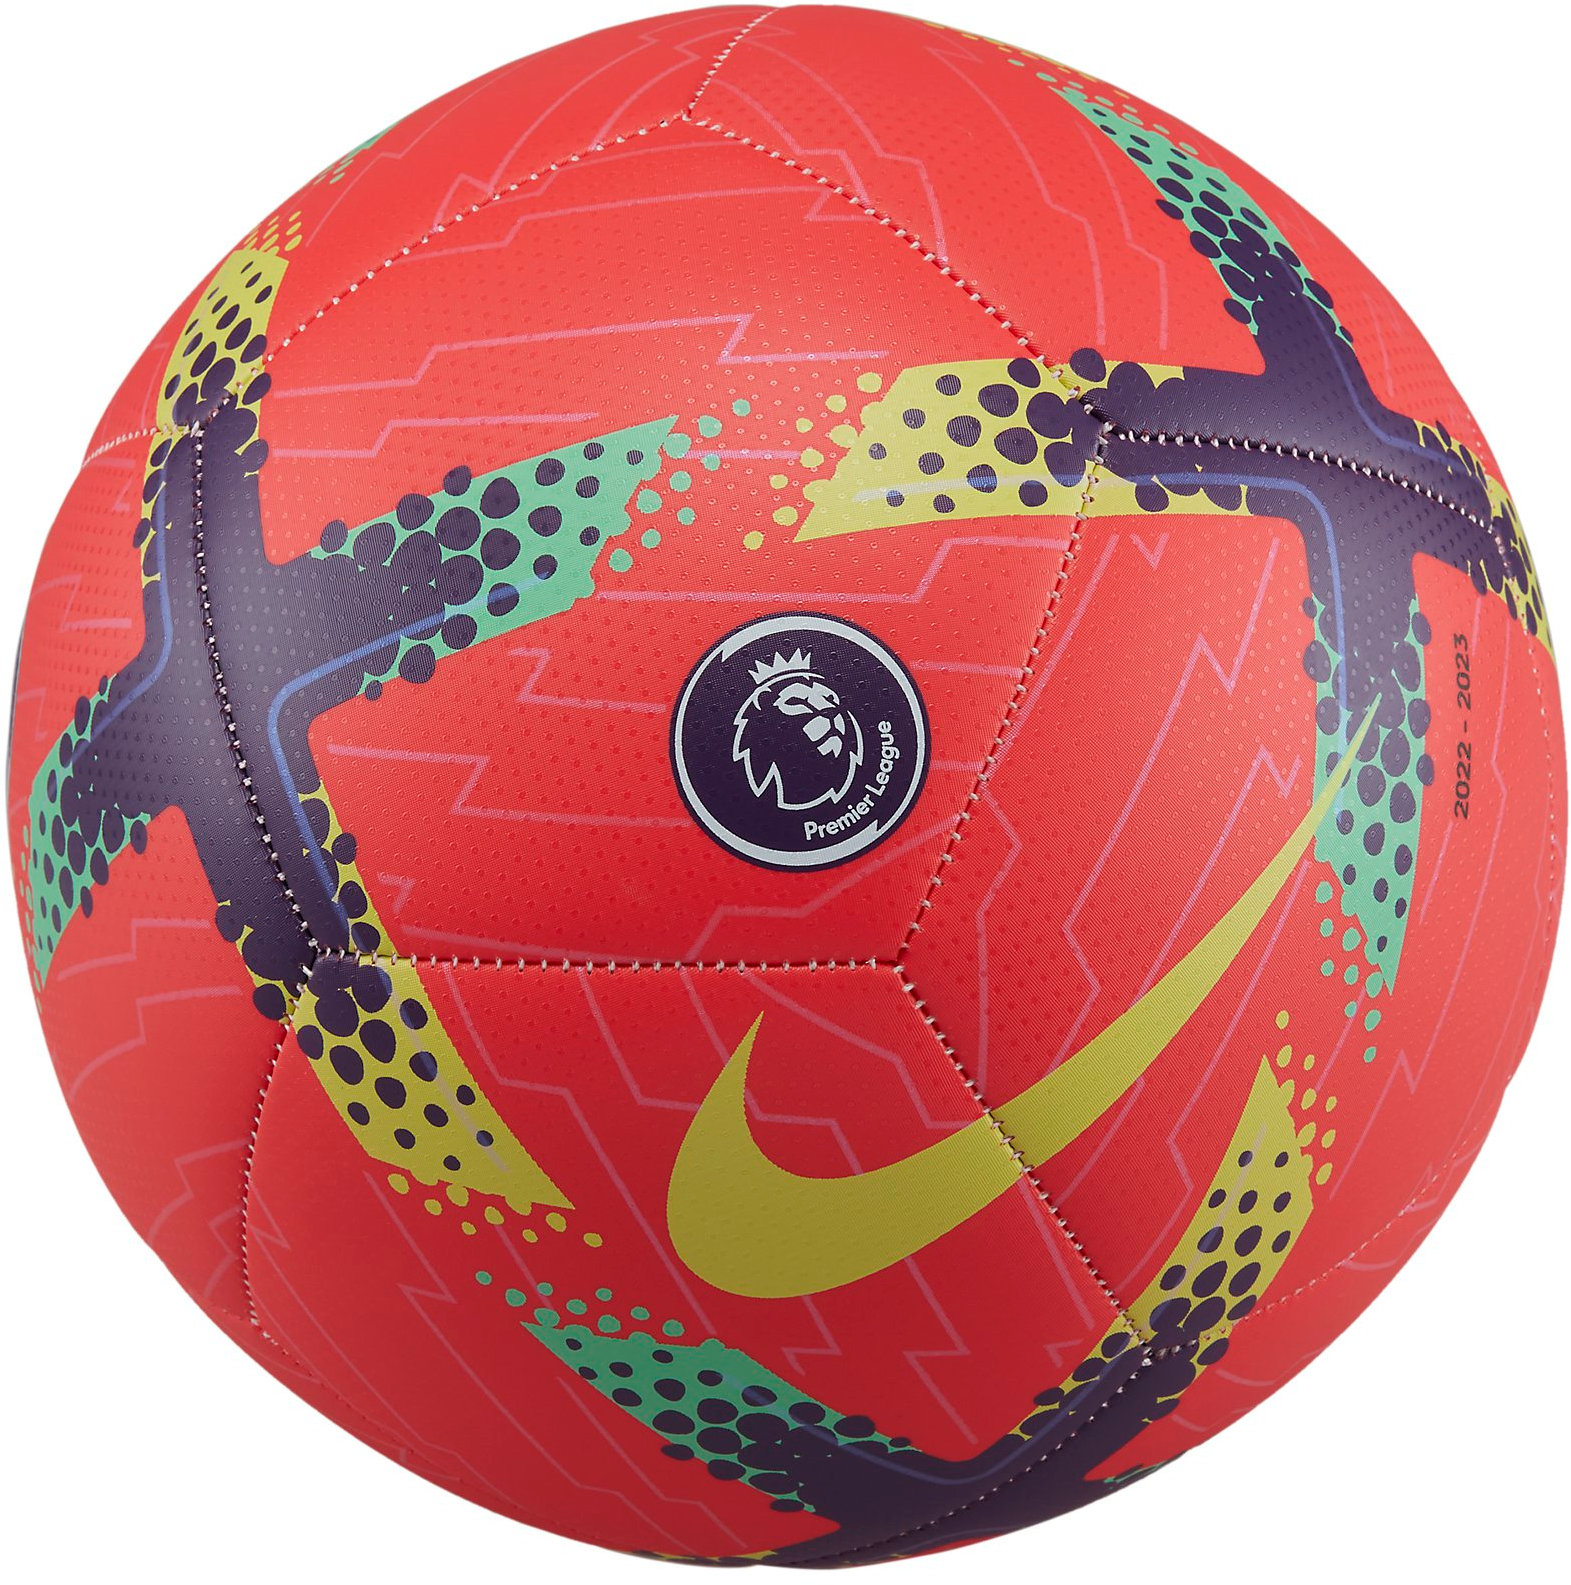 Ballon Nike Premier League Pitch Soccer Ball 